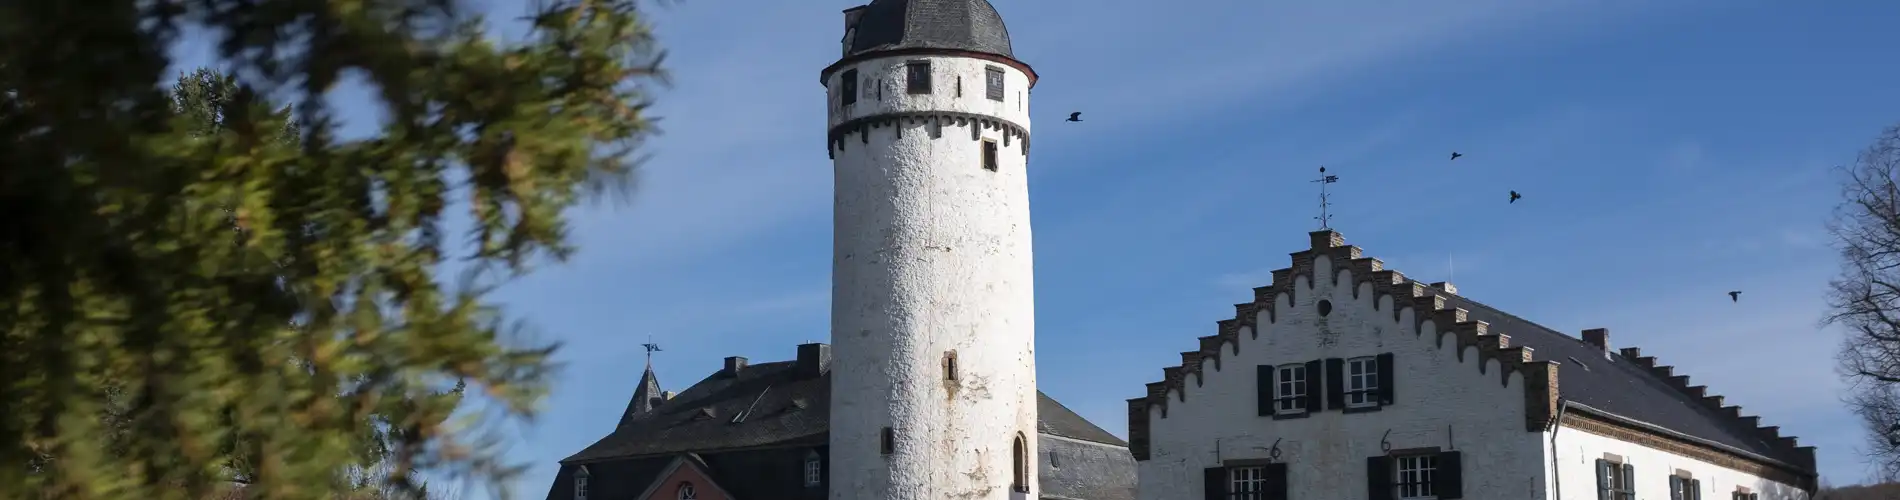 Burg Zievel | Stadt Mechernich